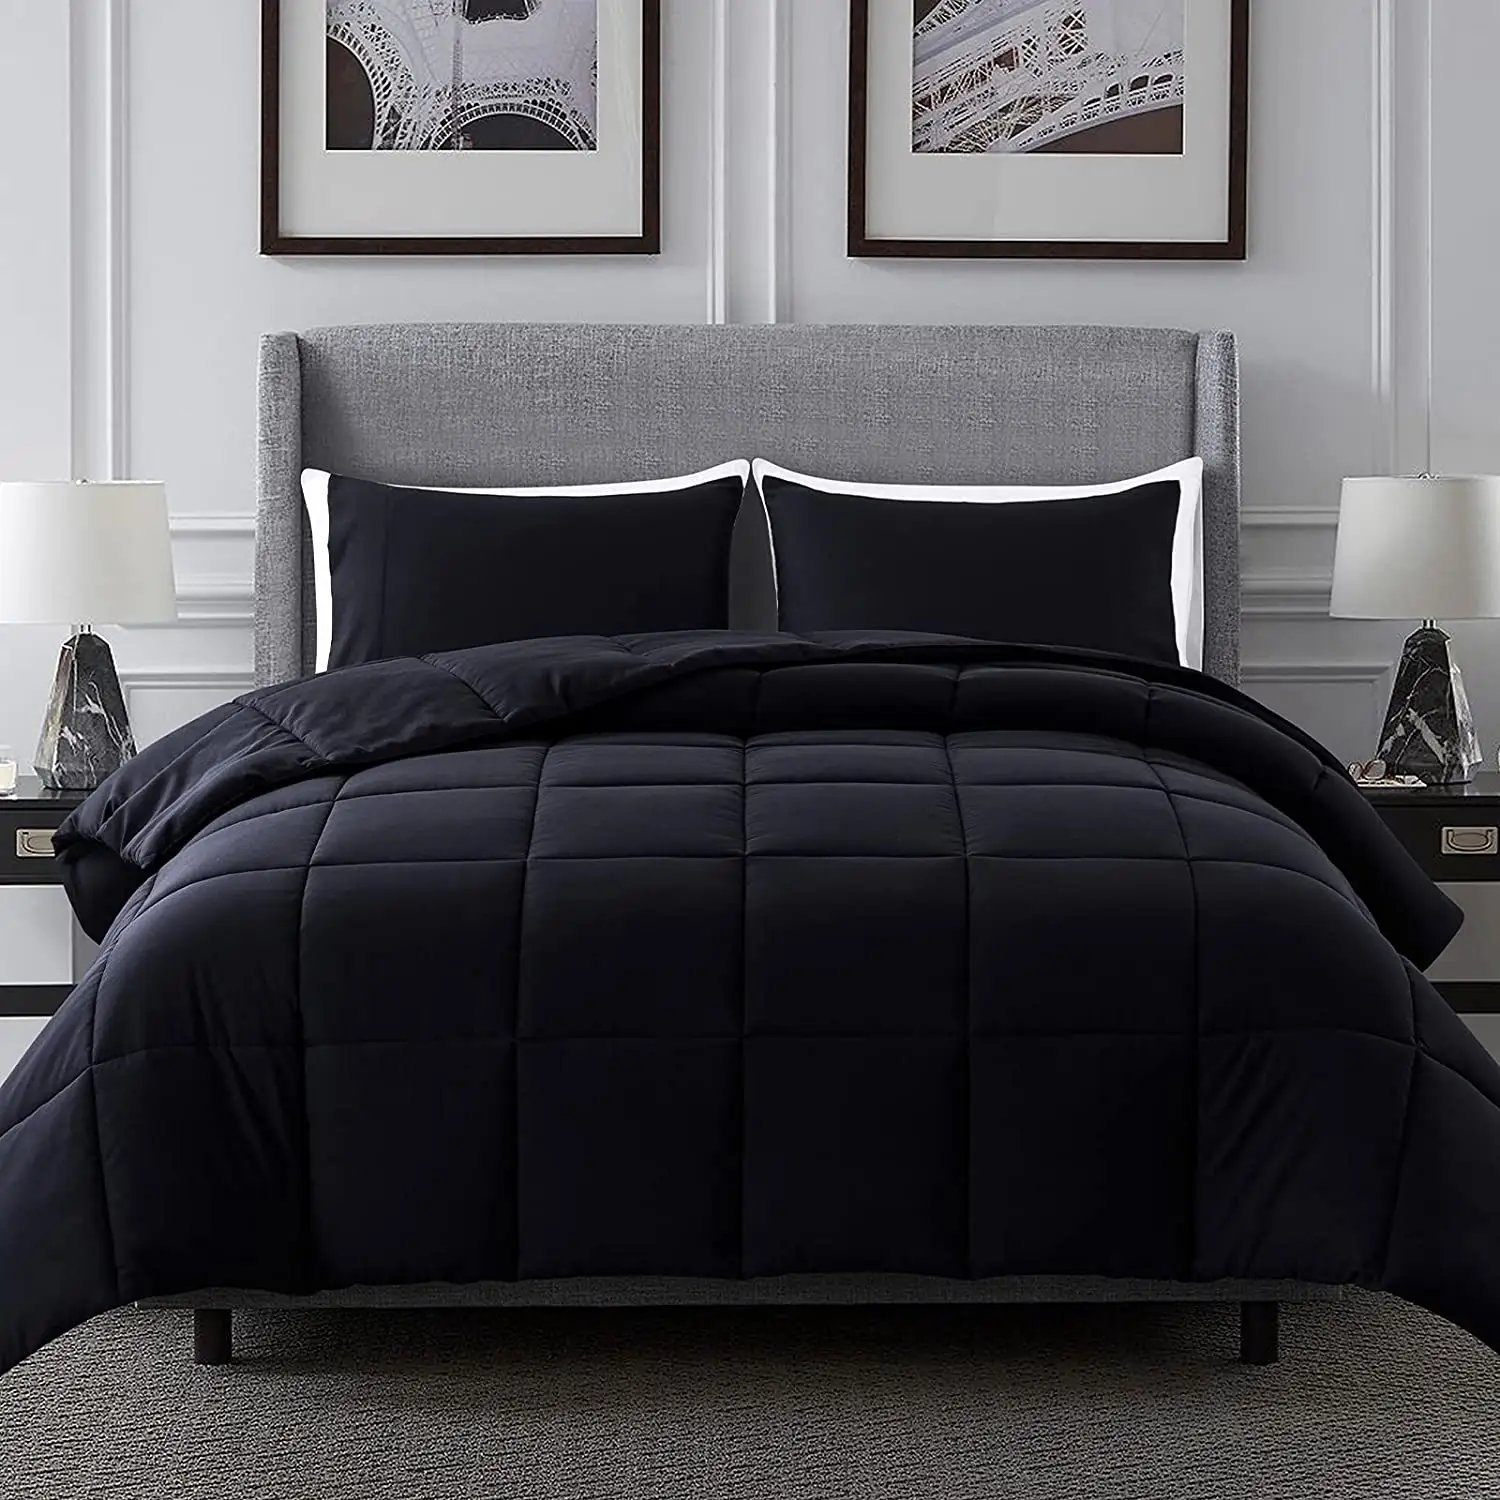 ชุดเครื่องนอนผ้าไมโครไฟเบอร์สำหรับโรงแรมผ้าห่มผ้าฝ้ายสีดำขนาดควีนไซส์ออกแบบได้ตามต้องการ